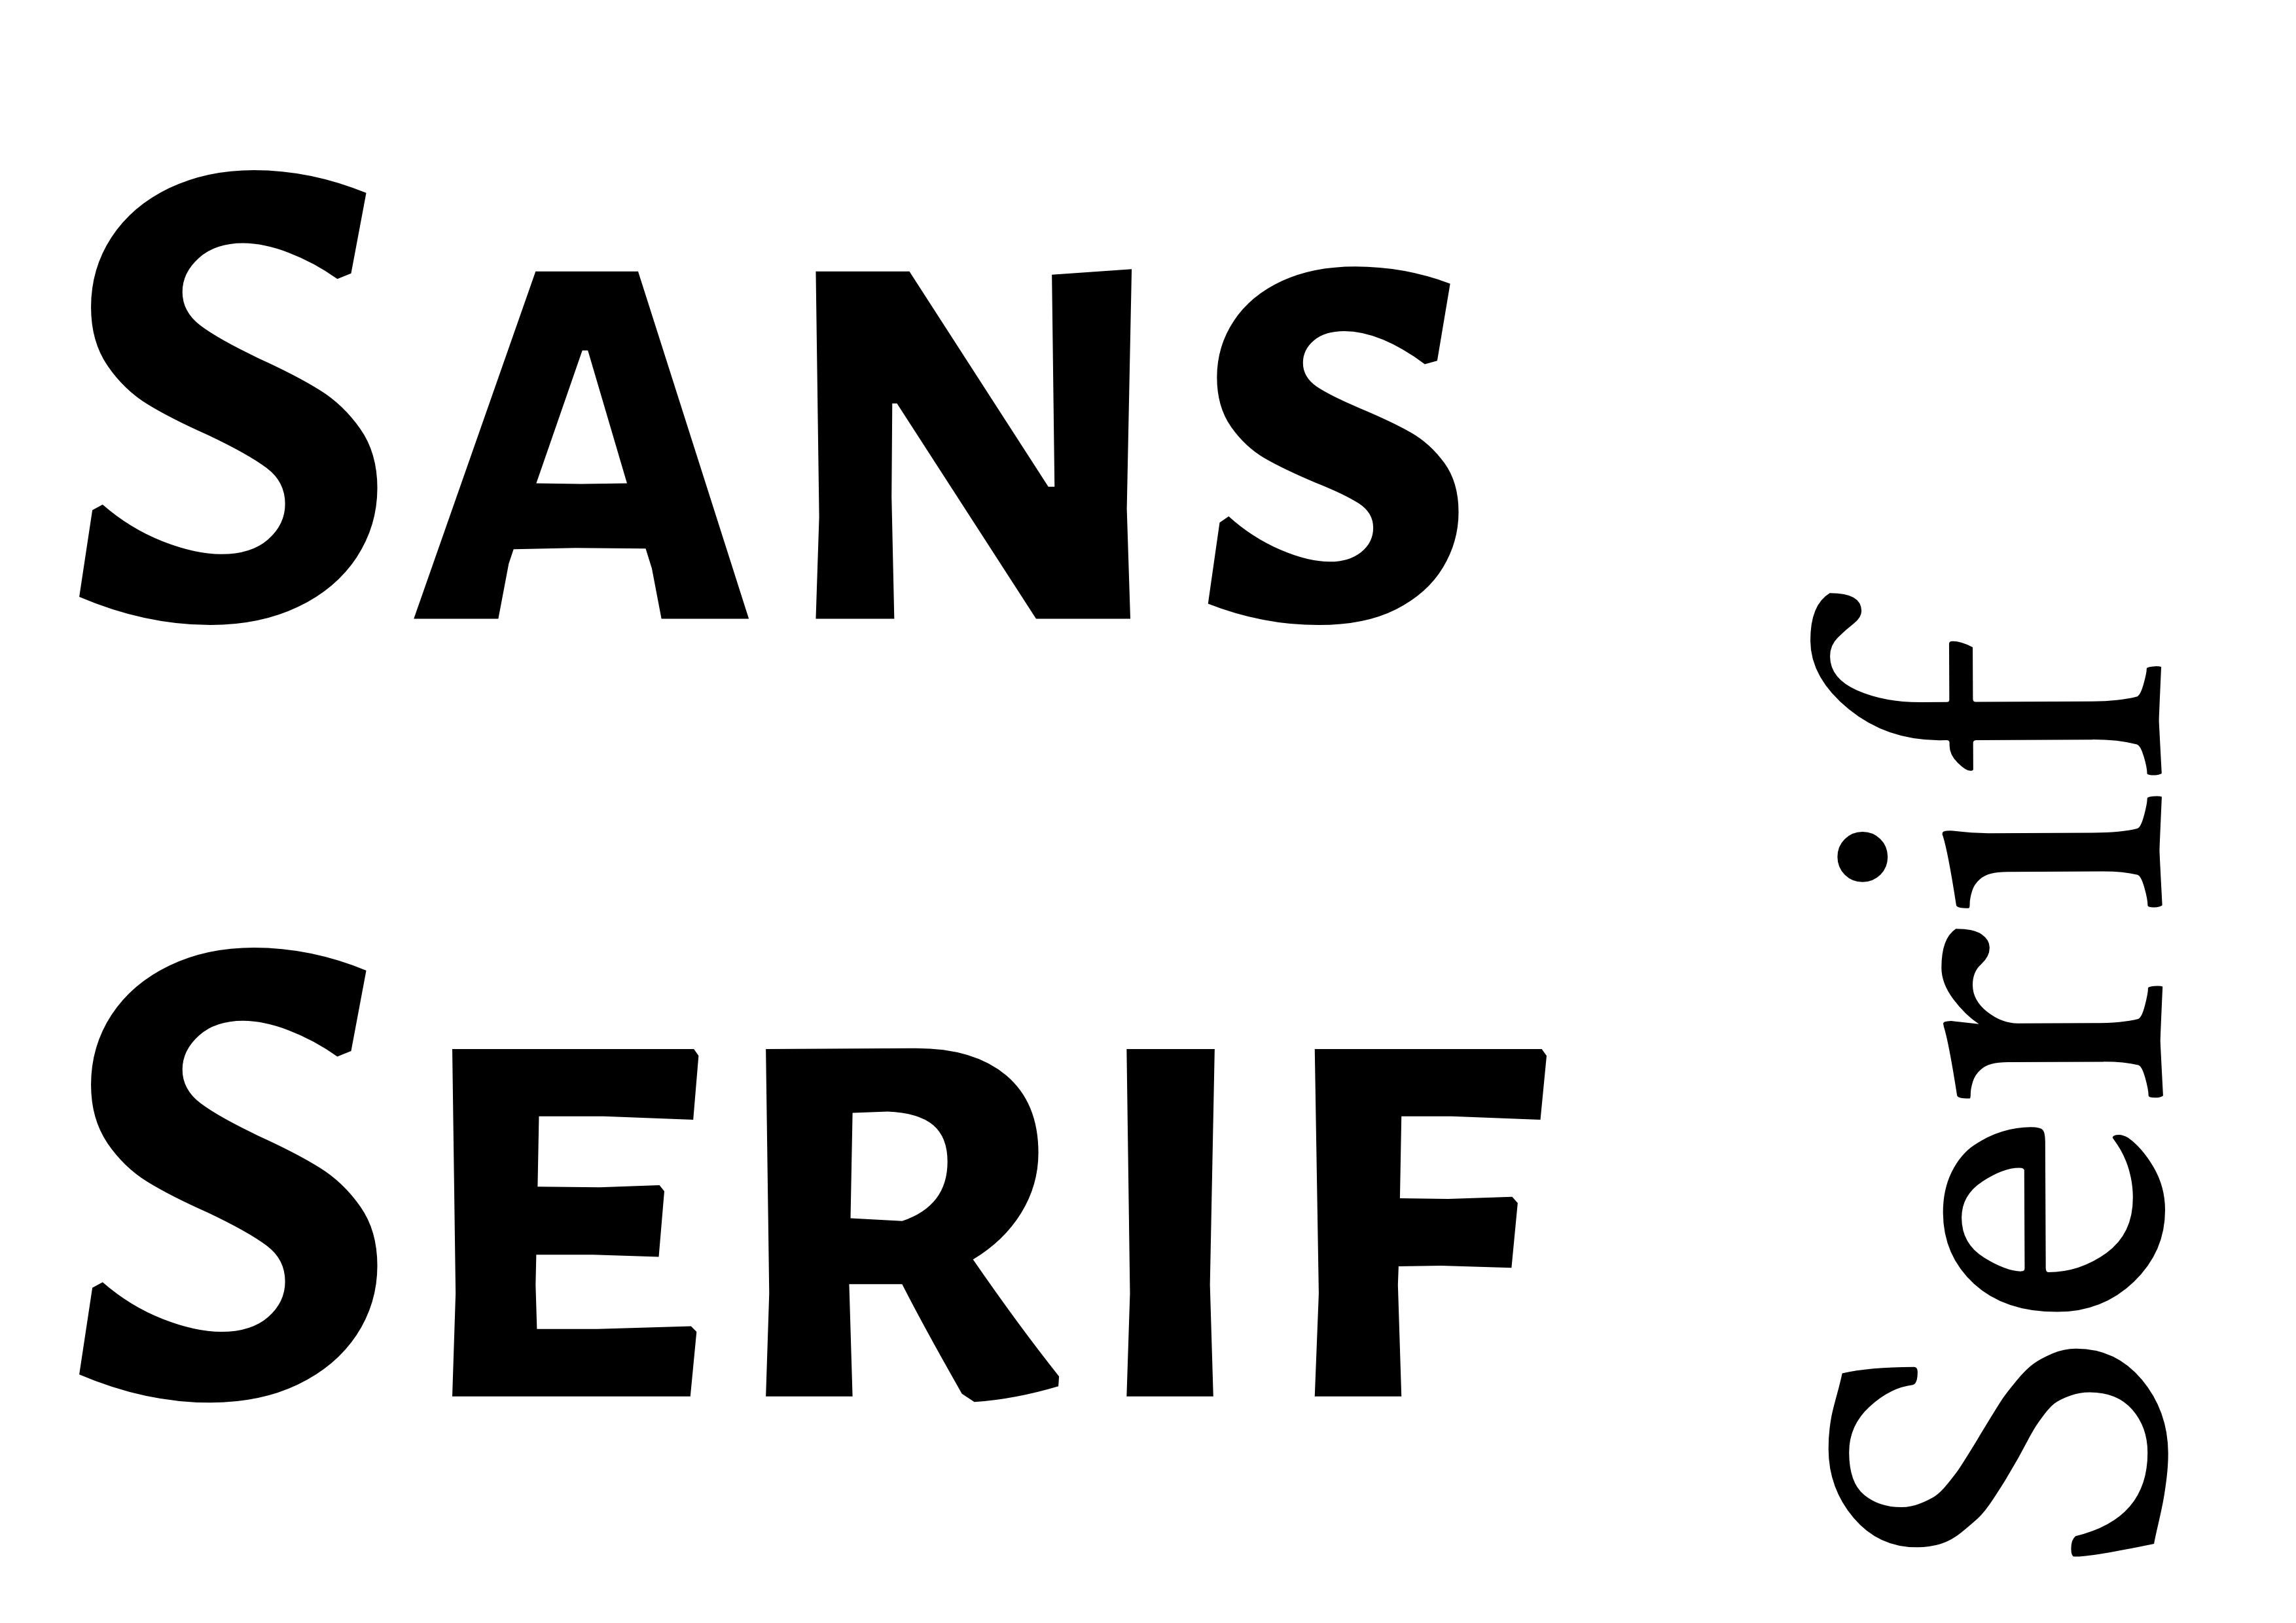 Emparelhamento de fontes - &#39;Sans Serif&#39; em negrito preto à esquerda com &#39;Serif&#39; girado para menor no canto inferior direito